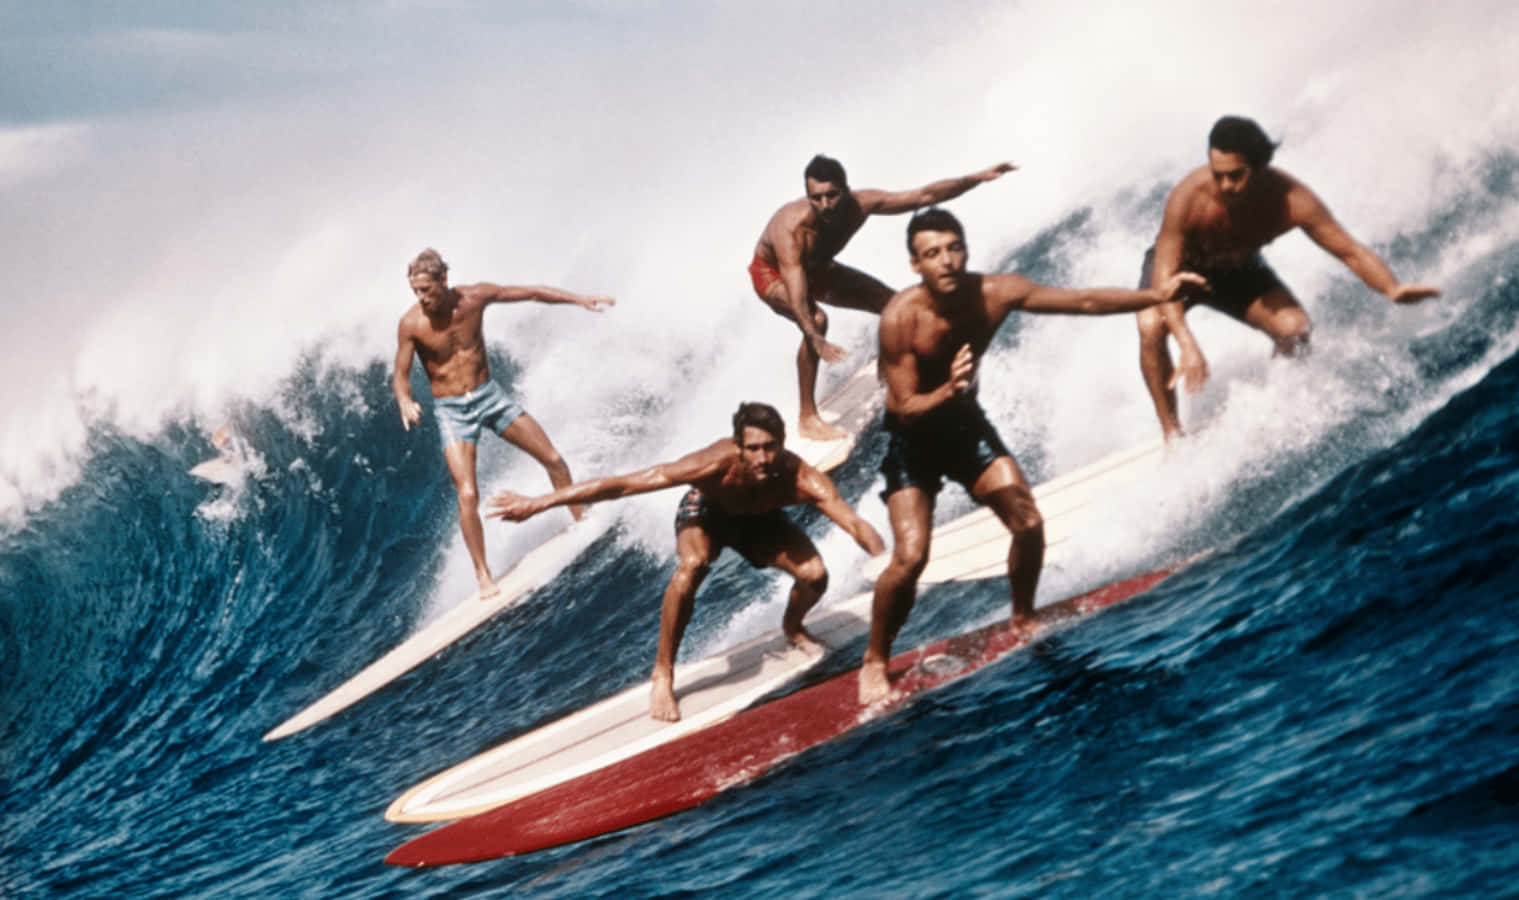 En gruppe surfere, der rider en bølge på surfbrætter Wallpaper